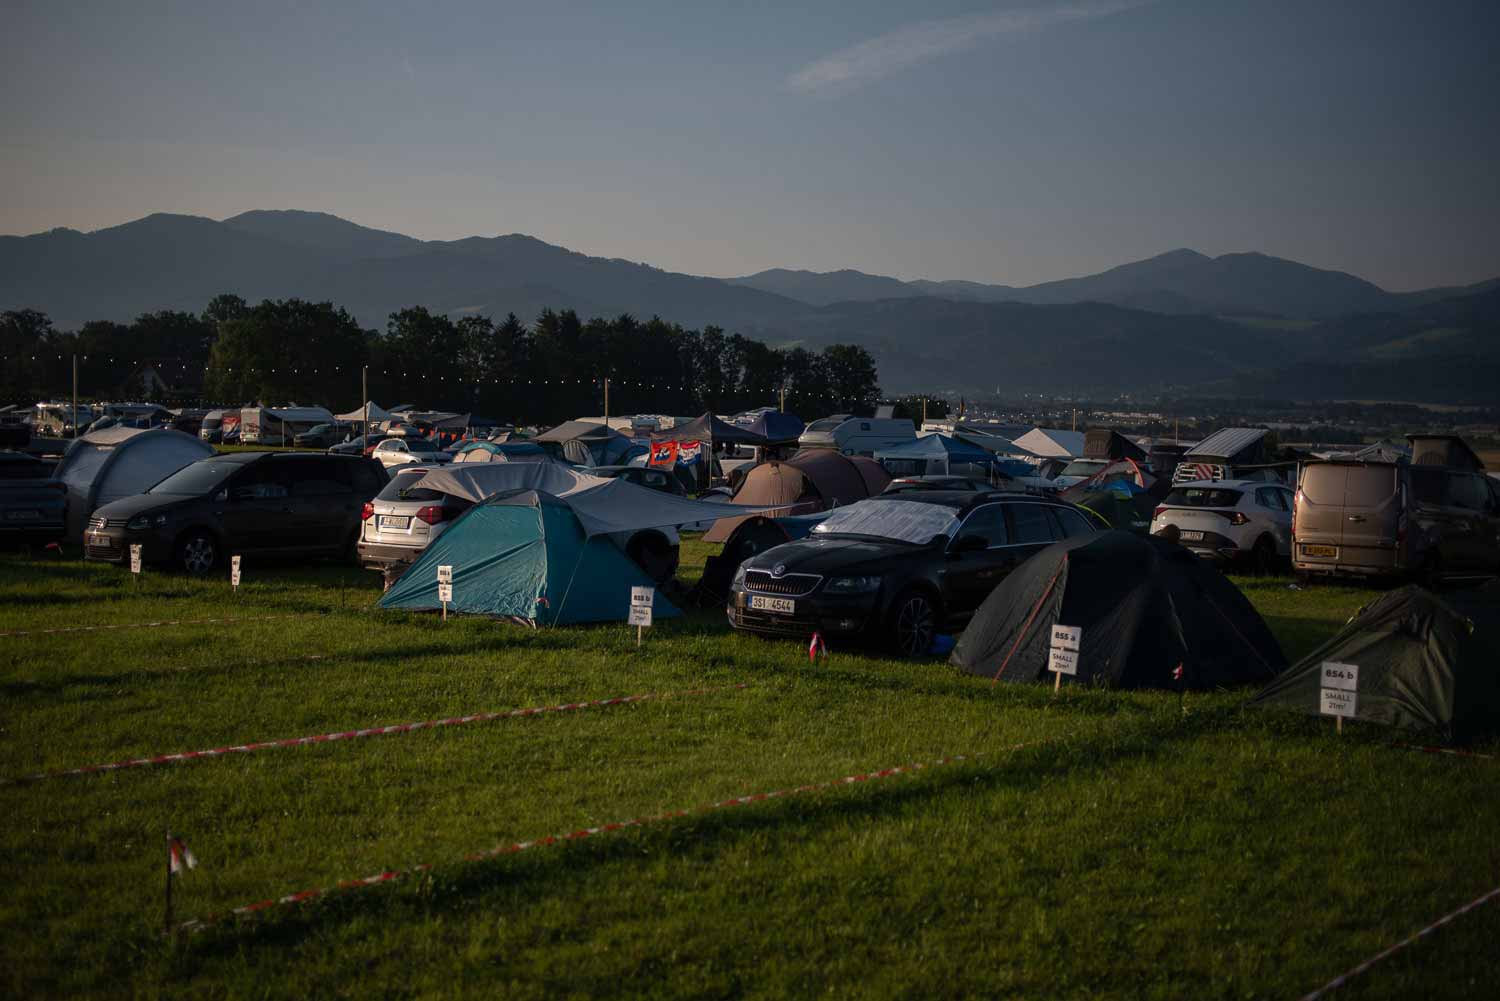 Stellplätze | Best bewertete Camping & Hotel | F1 & MotoGP | Red Bull Ring | Spielberg - Österreich